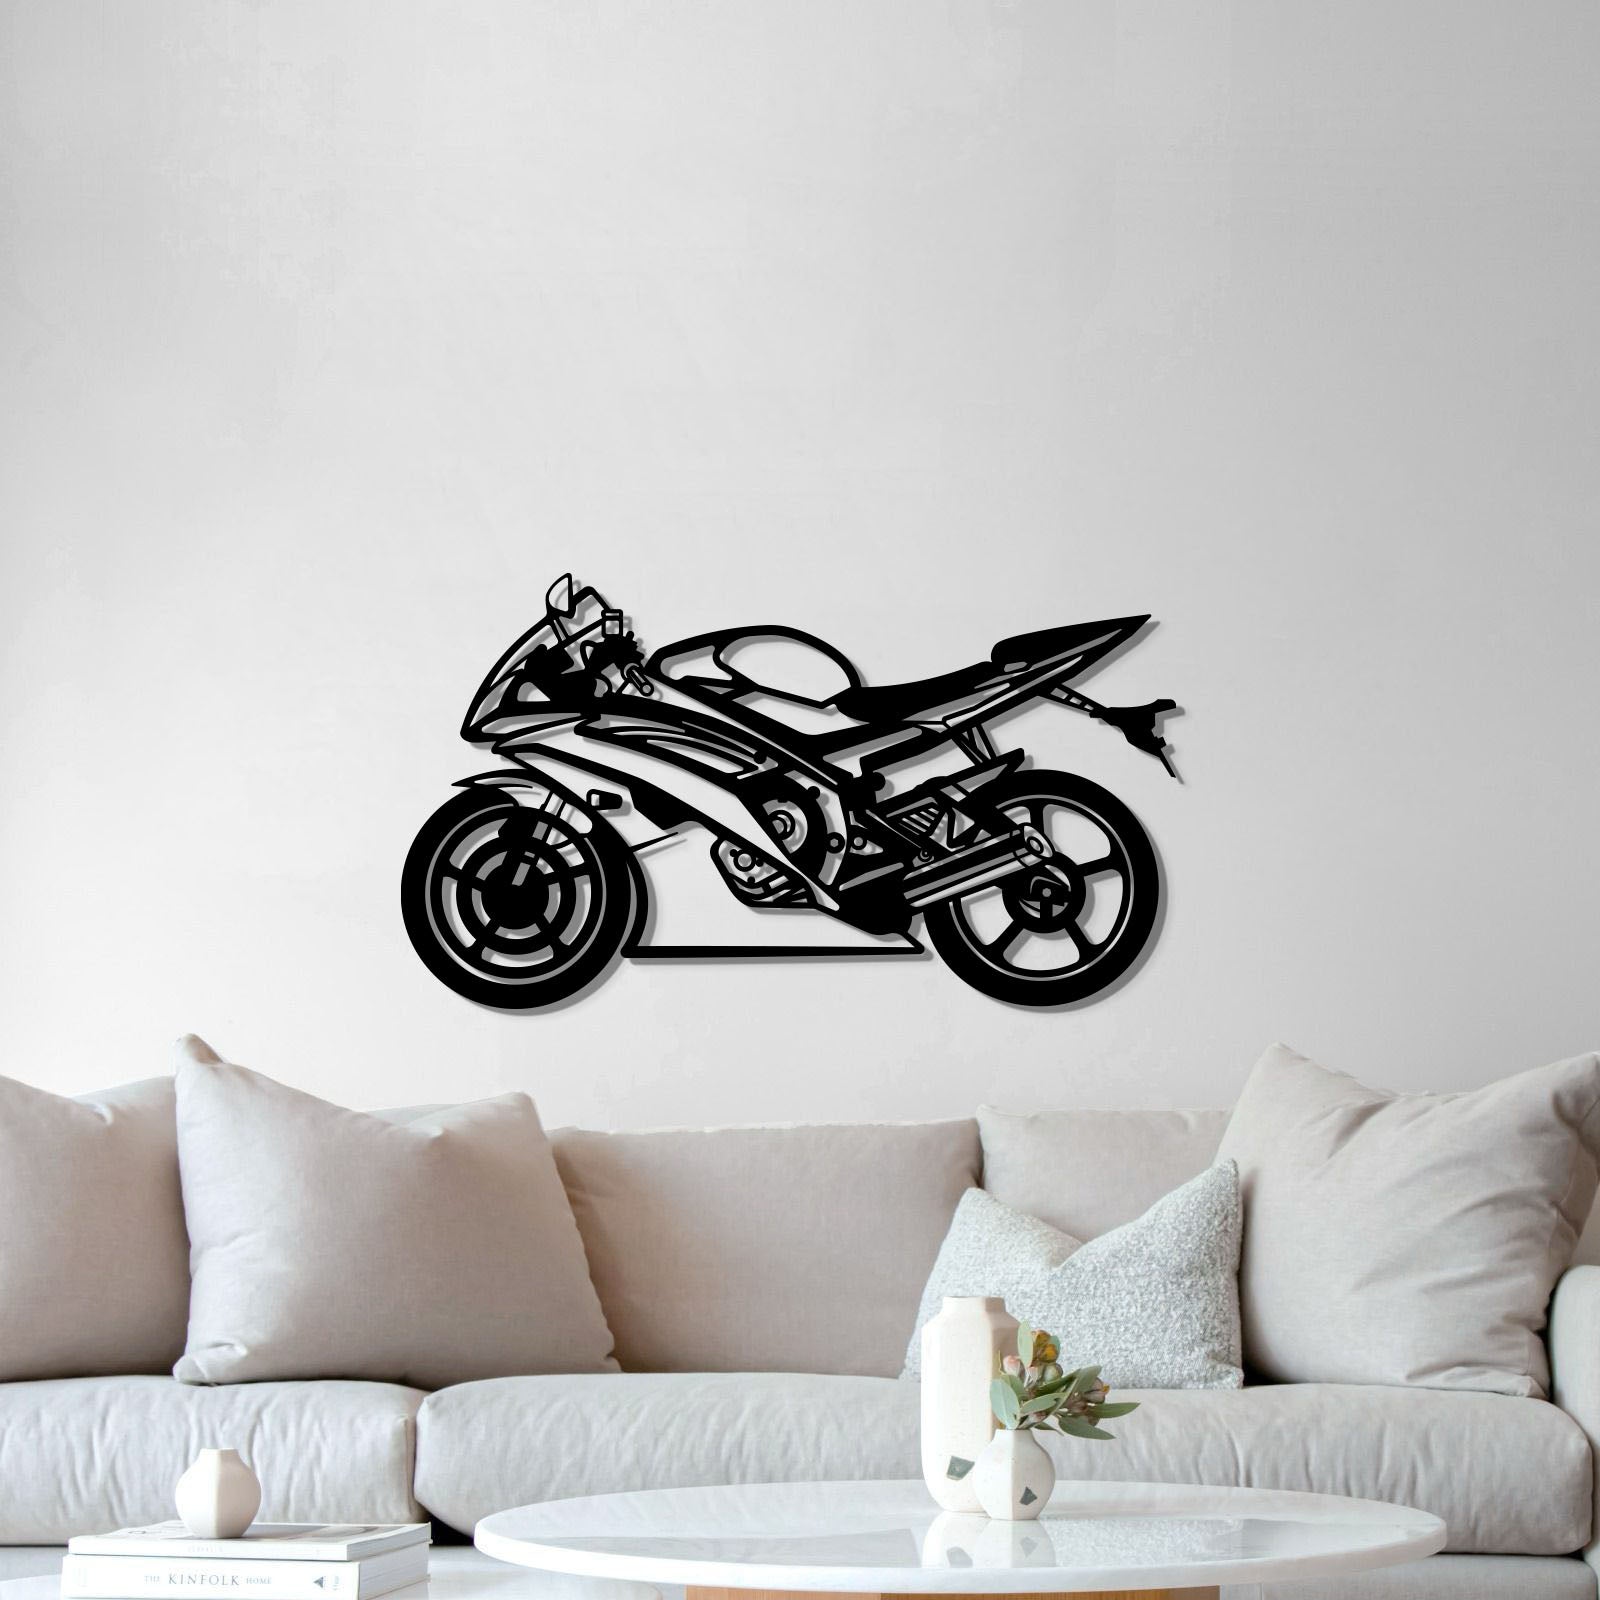 2014 R6 Metal Motorcycle Wall Art - MT0509